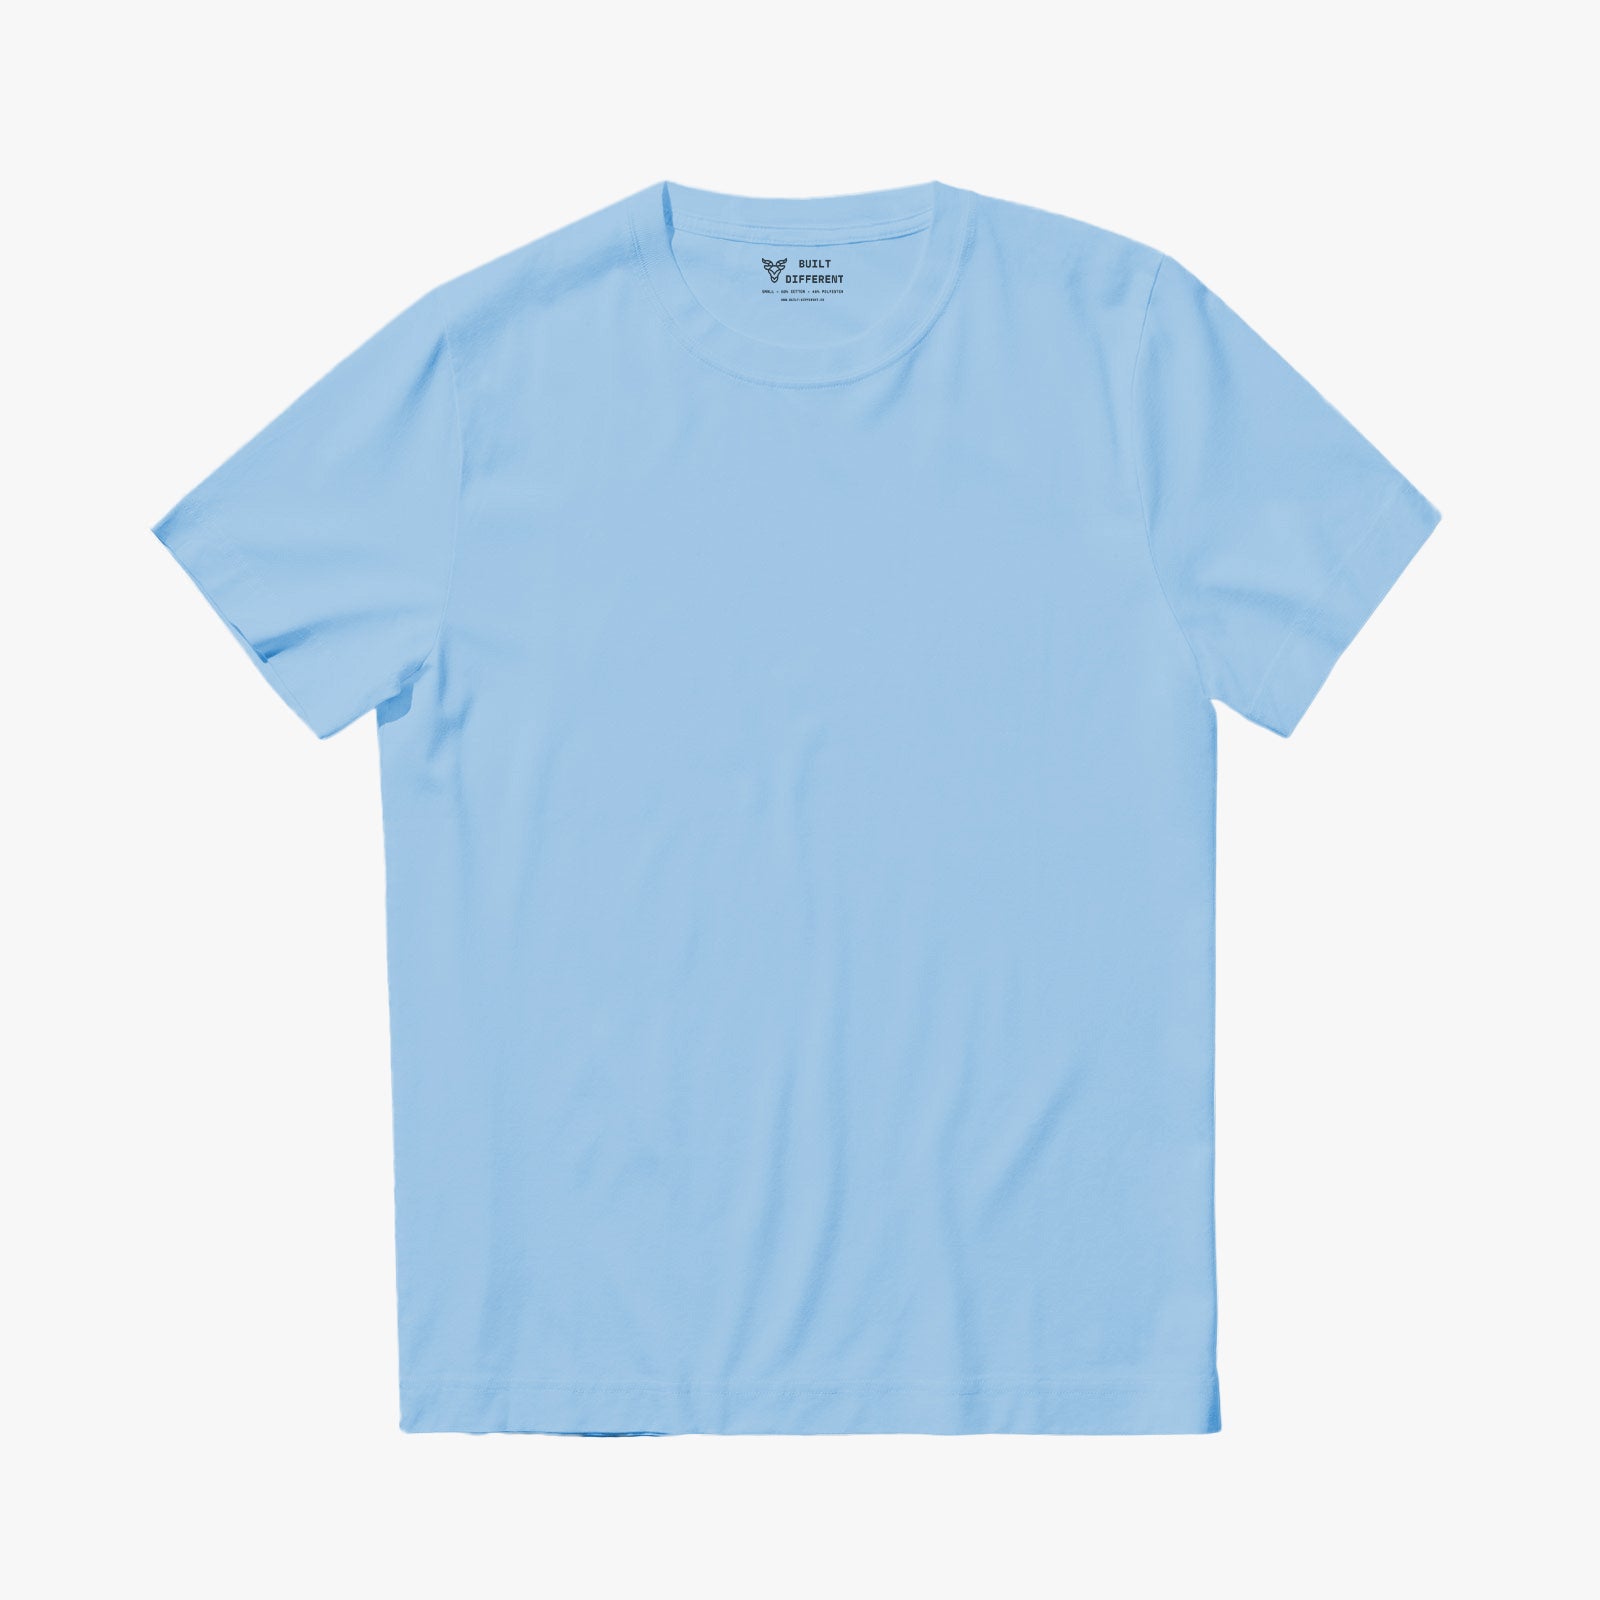 Ocean Blue Crew Neck T-Shirt – Built Different